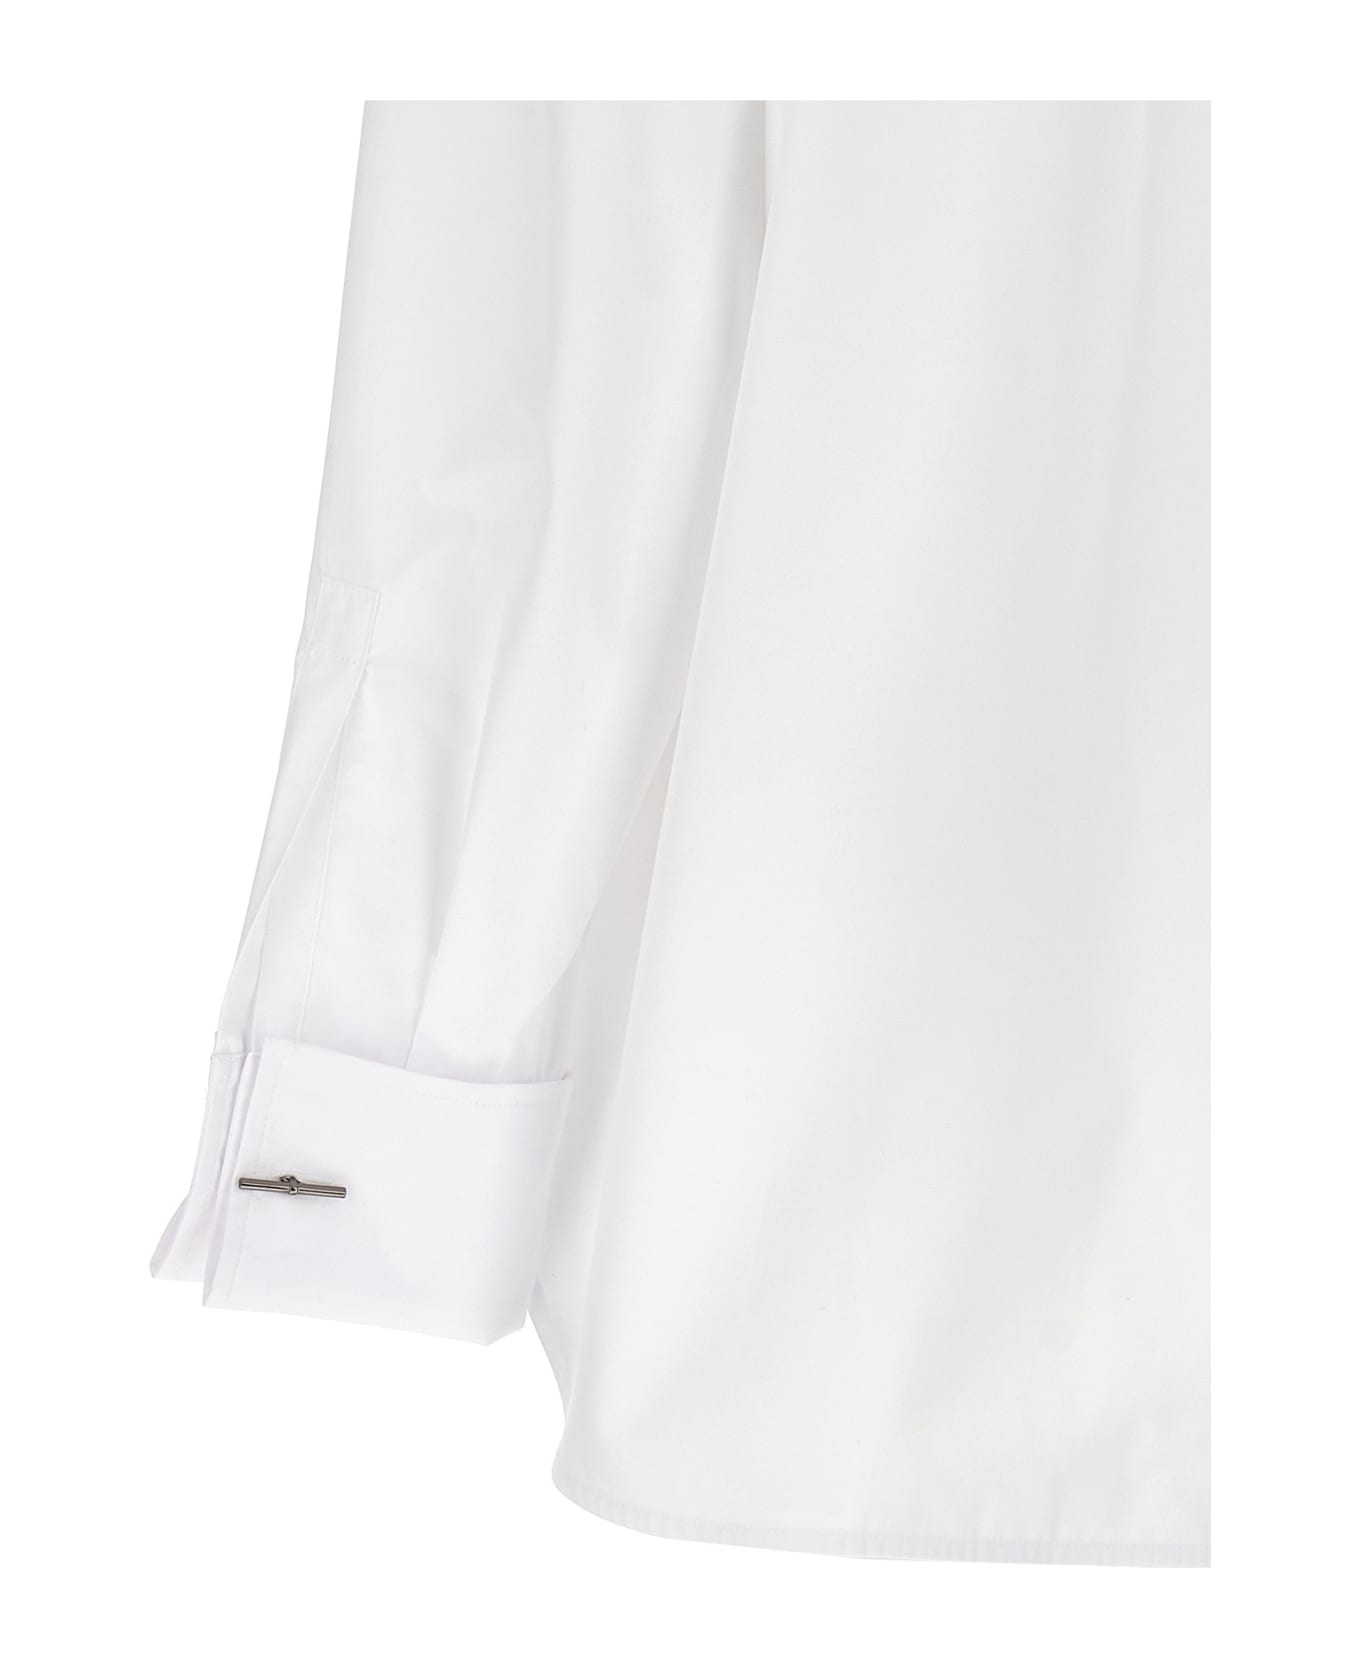 Max Mara 'ario' Shirt - White ブラウス